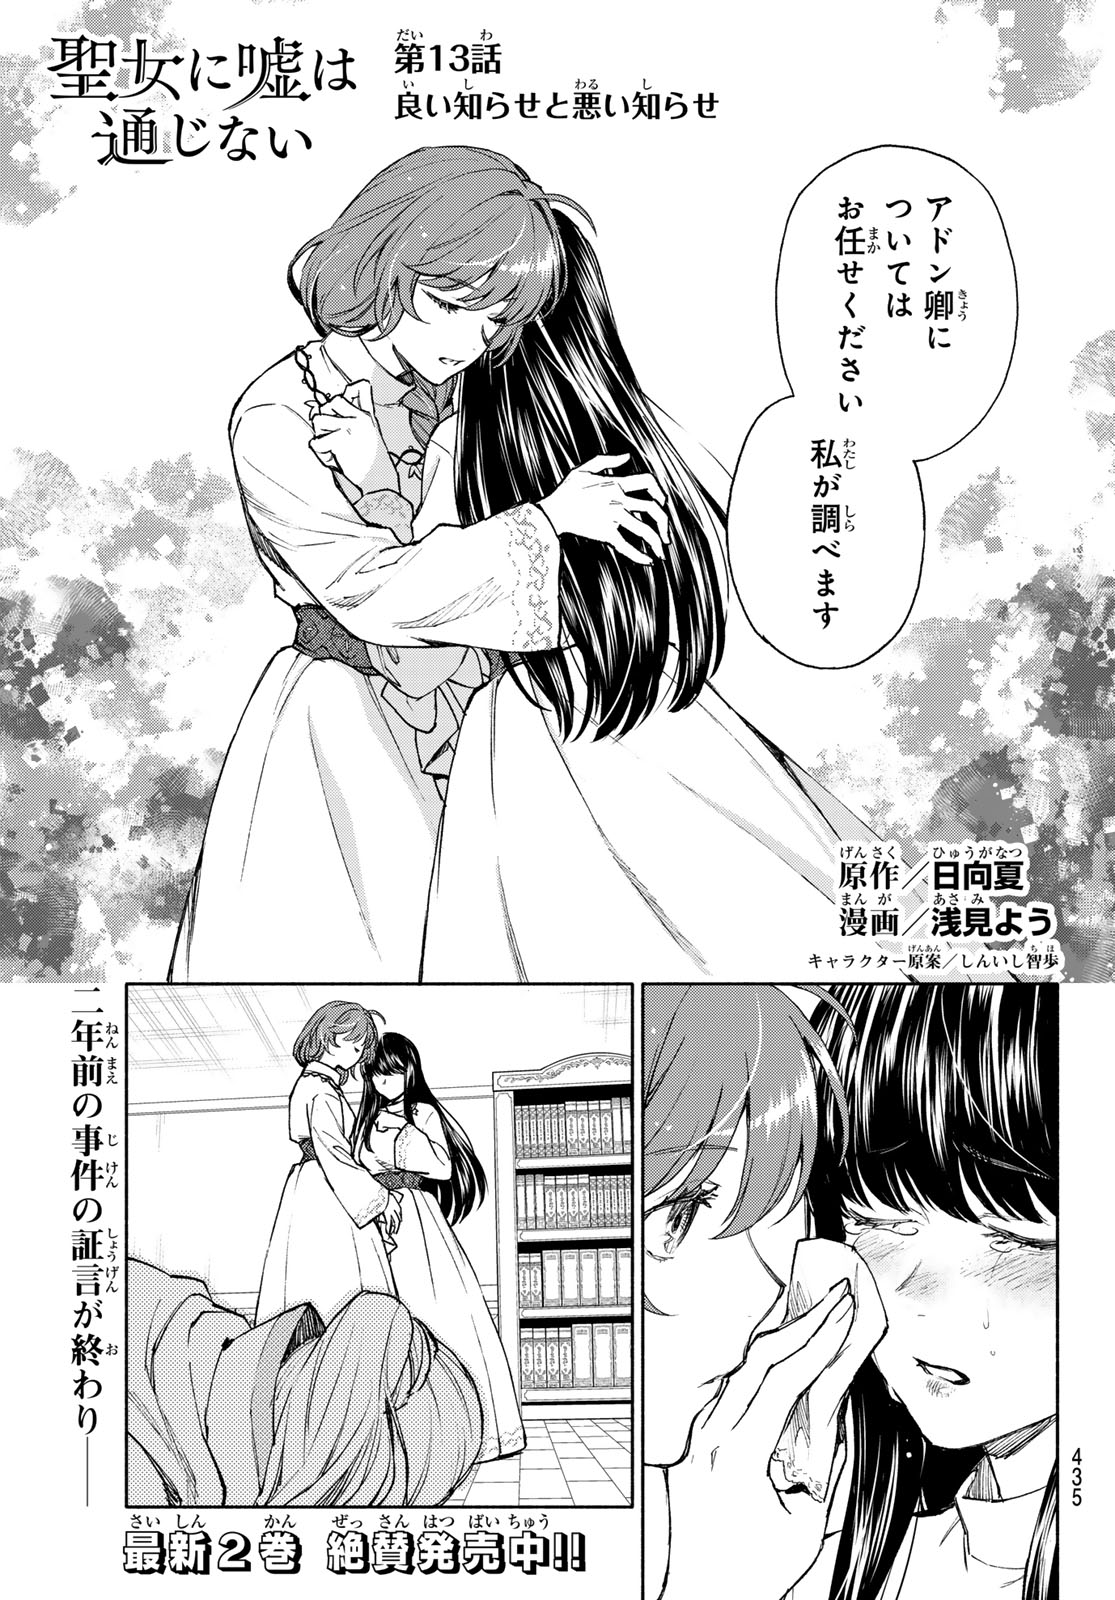 Seijo ni Uso wa Tsuujinai - Chapter 13 - Page 1